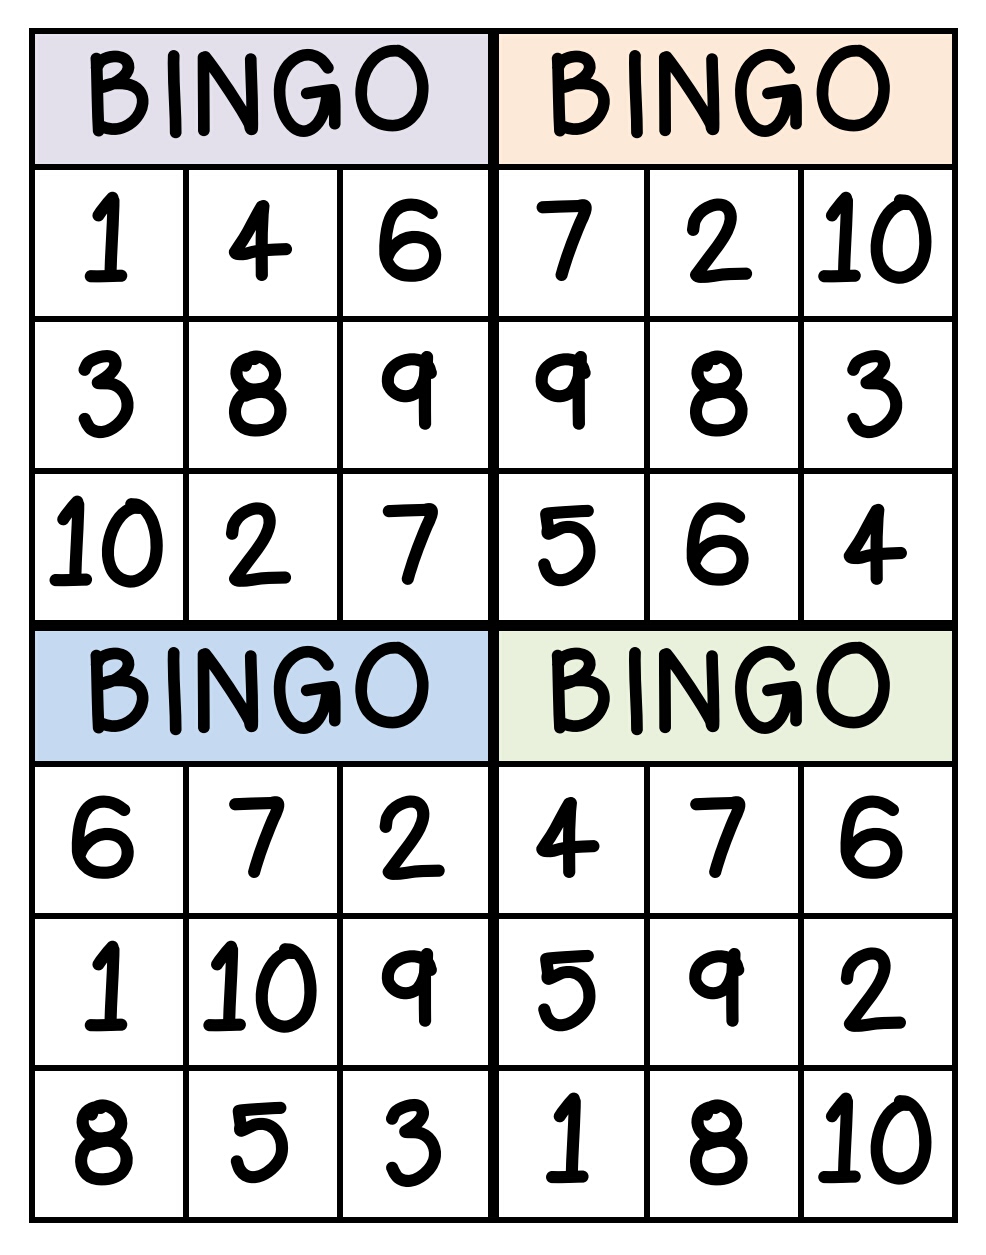 jogar bingo gratis e ganhar dinheiro de verdade